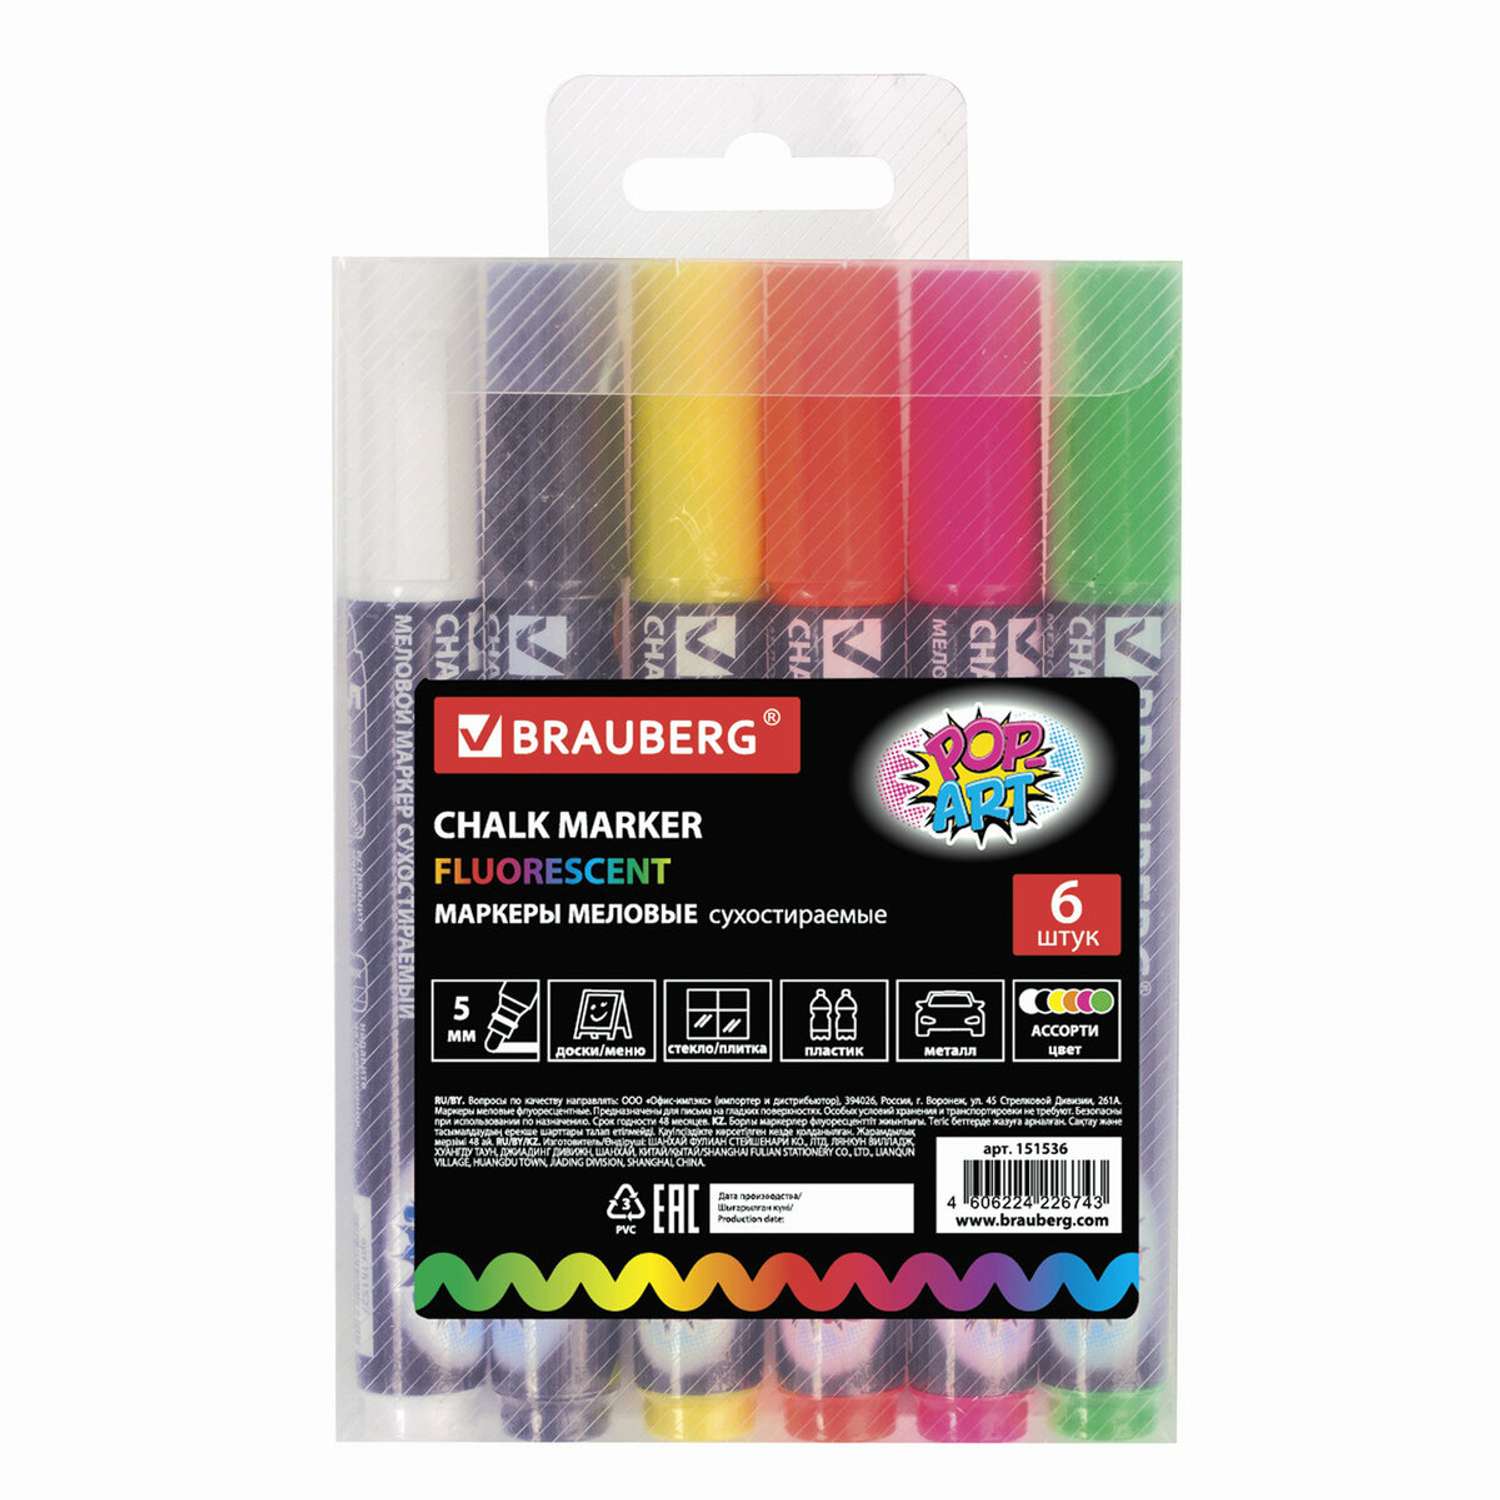 Маркеры меловые Brauberg Pop-Art набор 6 цветов 5 мм сухостираемые для гладких поверхностей - фото 1